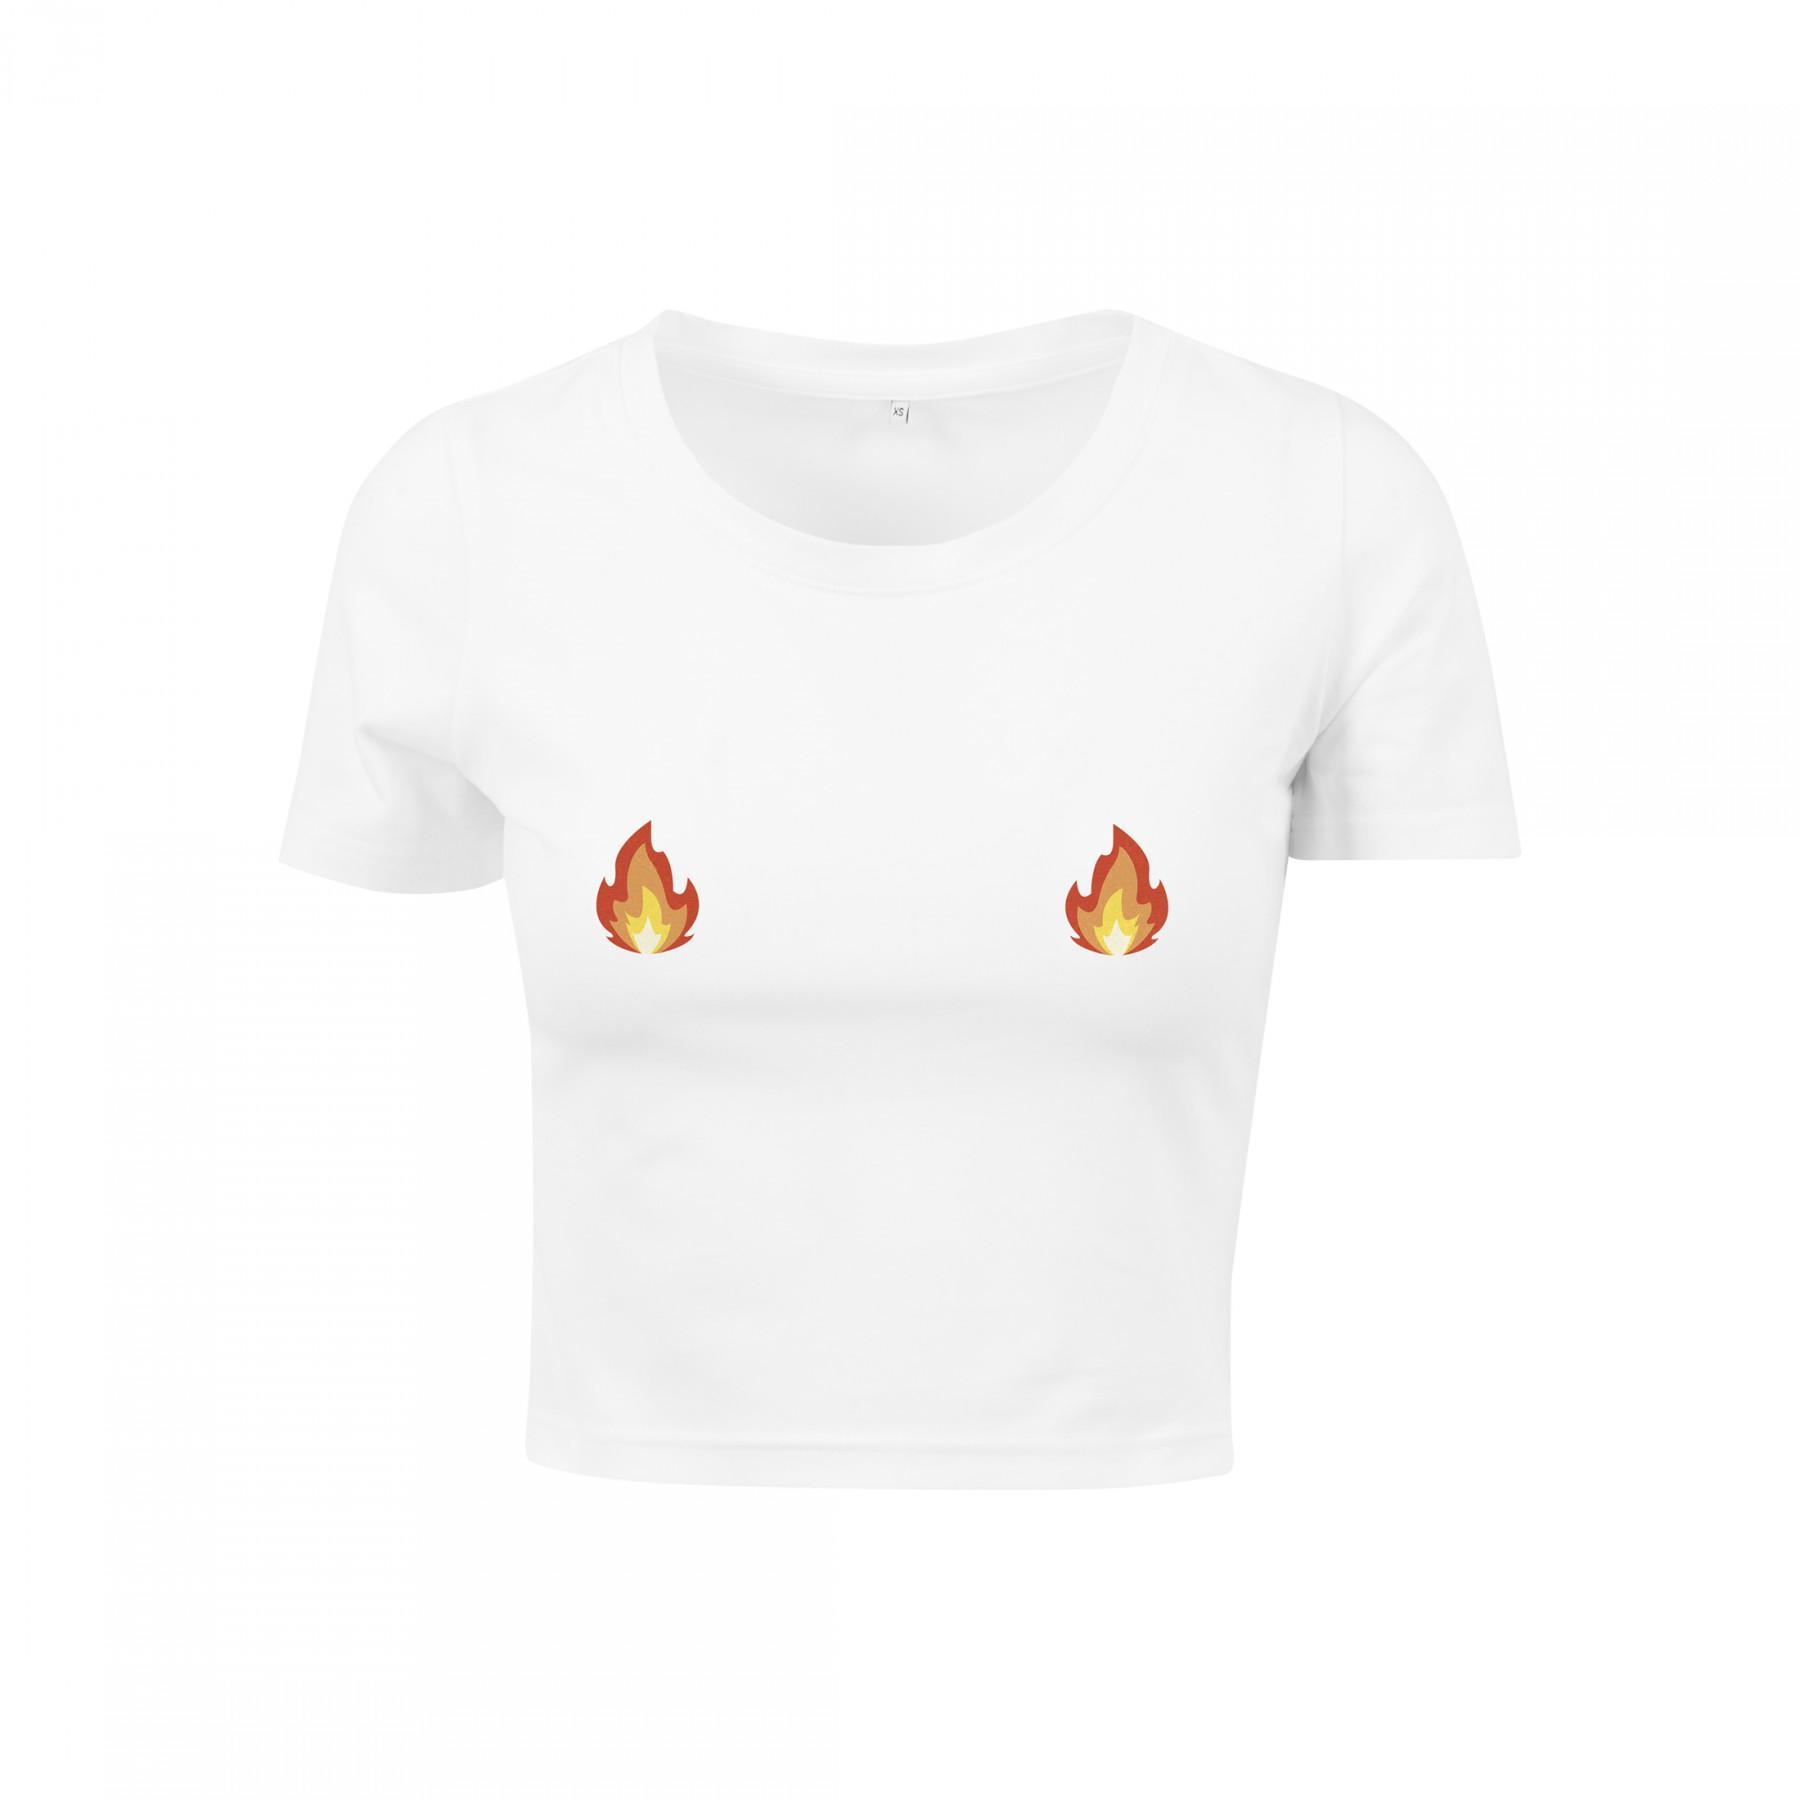 T-shirt femme Mister Tee flames